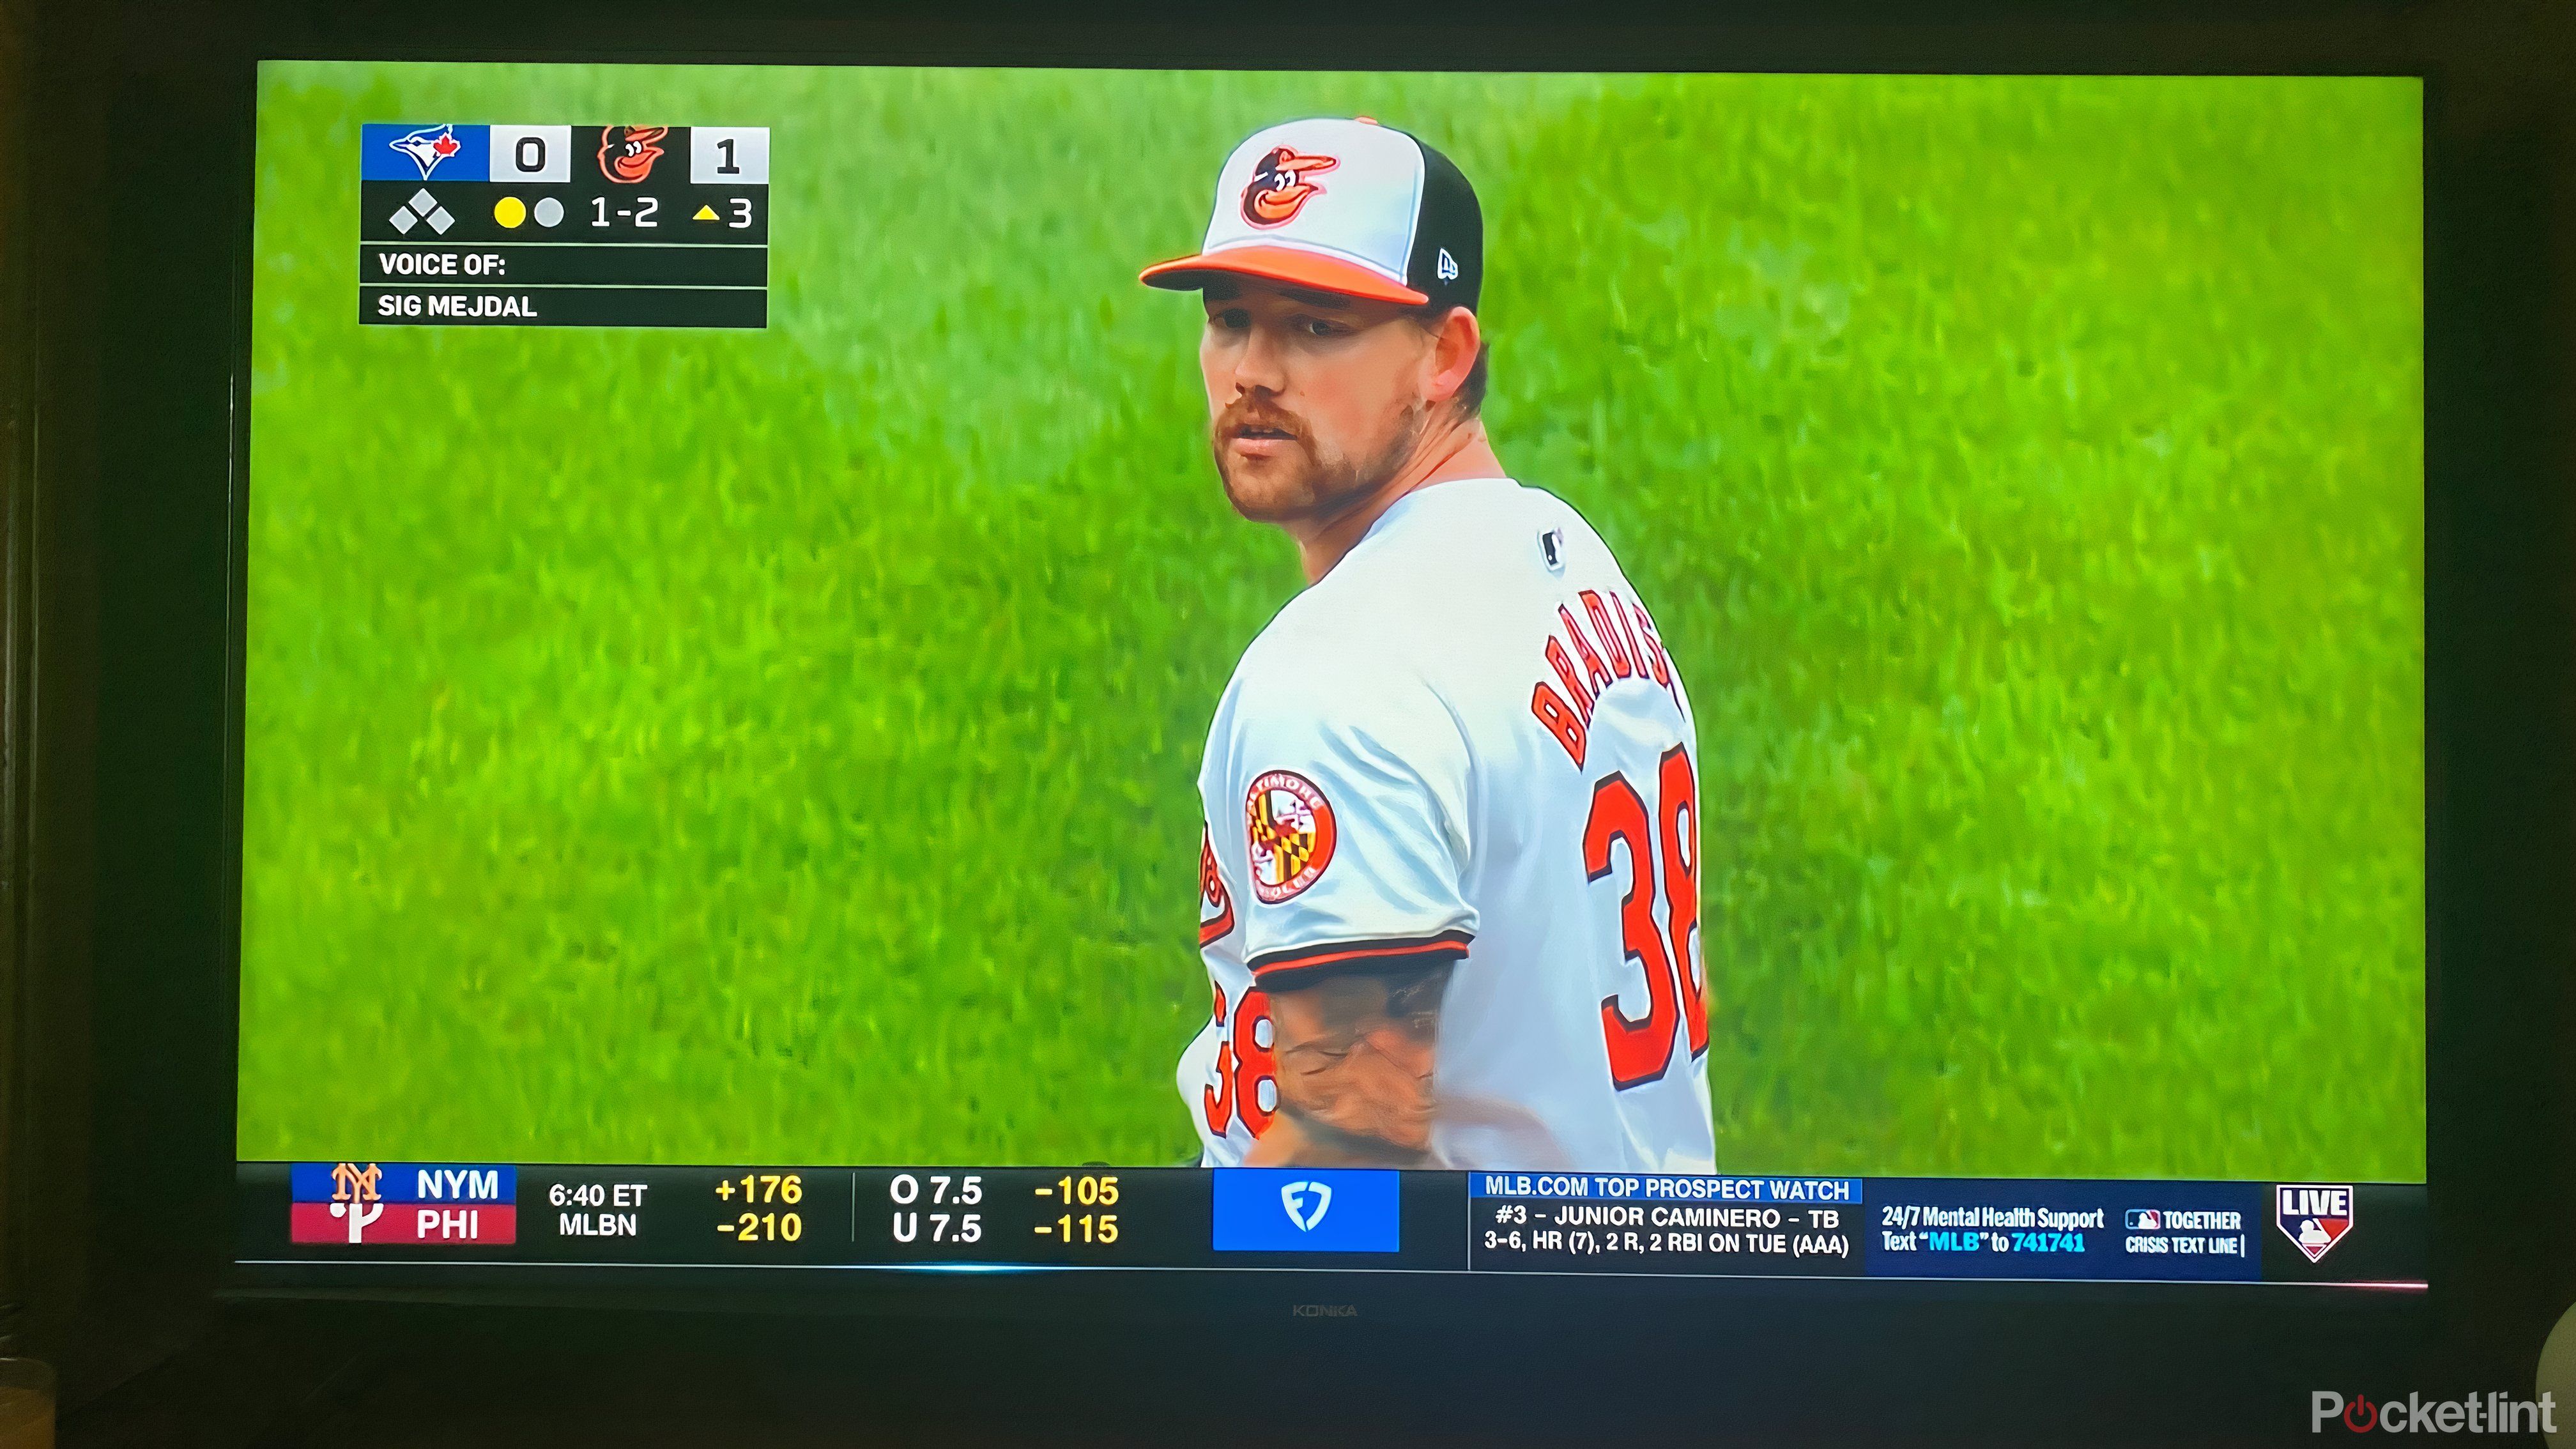 Smart TV displaying a New York and Philadelphia baseball game. 